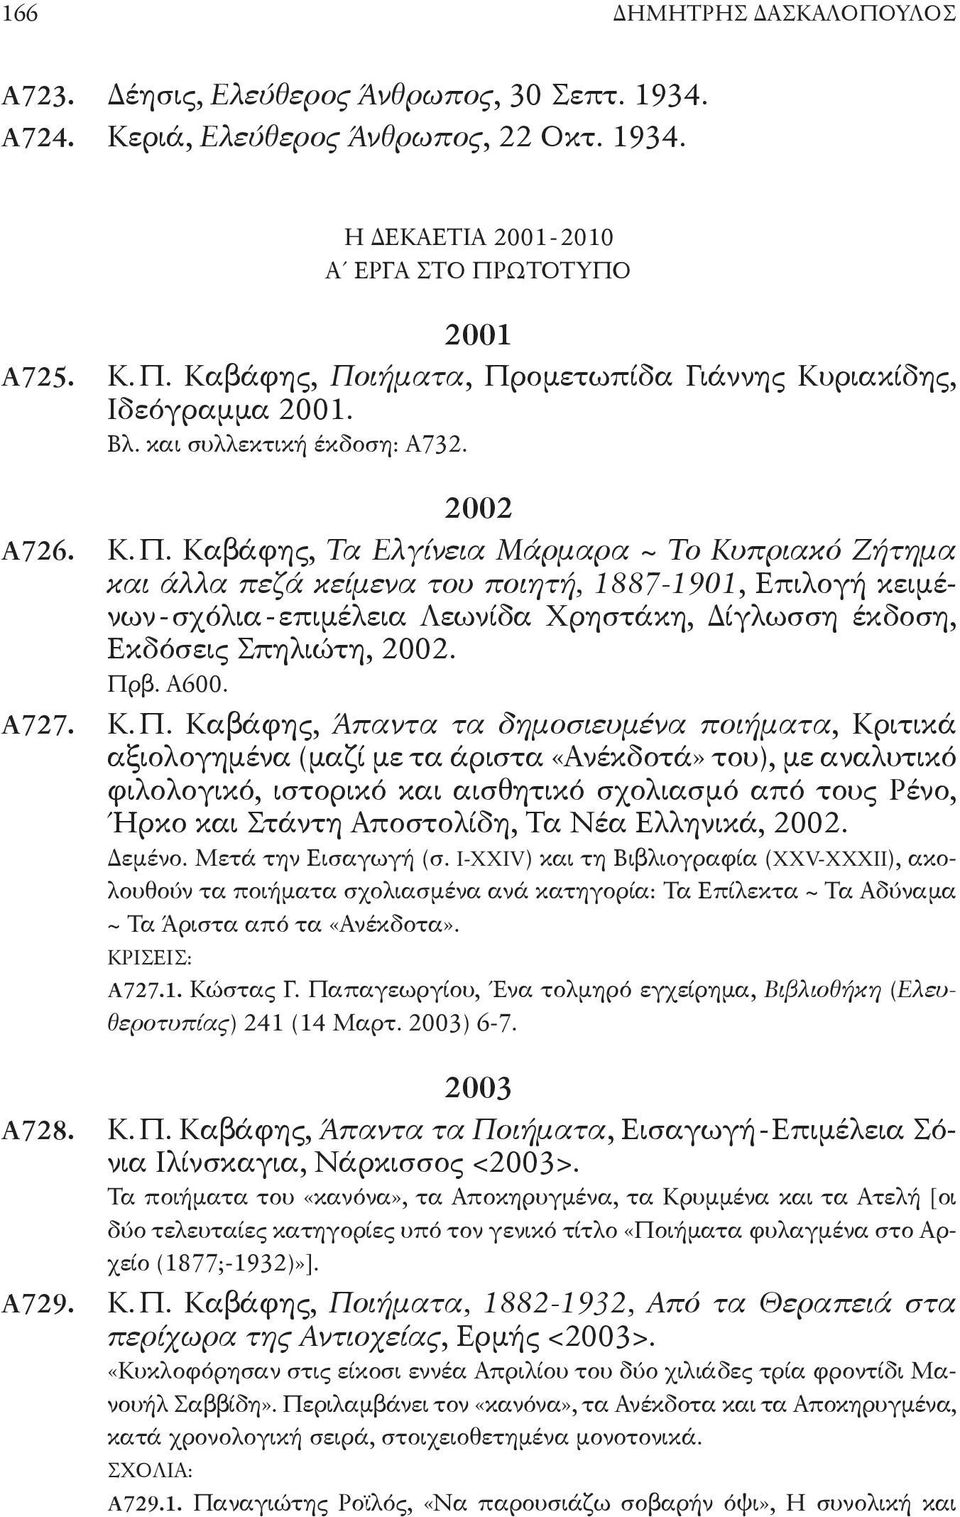 καβάφης, Τα Ελγίνεια Μάρμαρα ~ Το Κυπριακό Ζήτημα και άλλα πεζά κείμενα του ποιητή, 1887-1901, επιλογή κειμένων-σχόλια-επιμέλεια Λεωνίδα Χρηστάκη, Δίγλωσση έκδοση, εκδόσεις σπηλιώτη, 2002. Πρβ. α600.